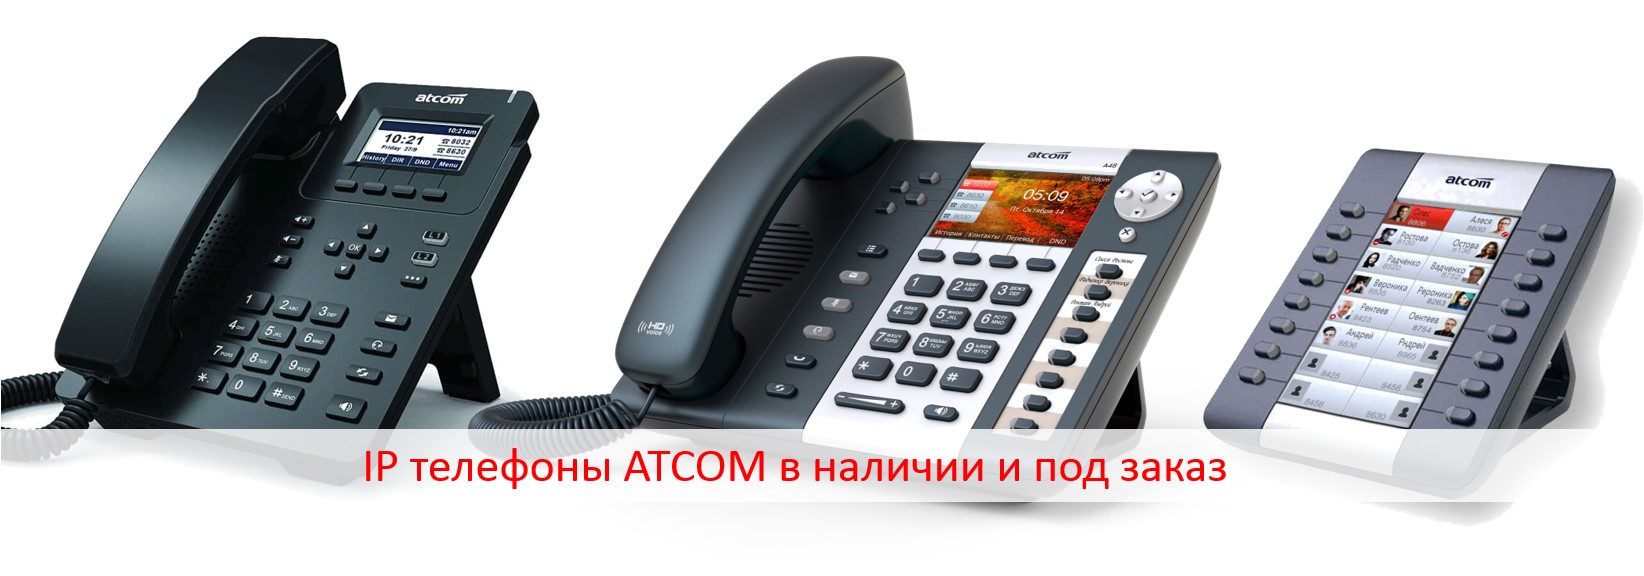 IP телефоны ATCOM в наличии и под заказ!